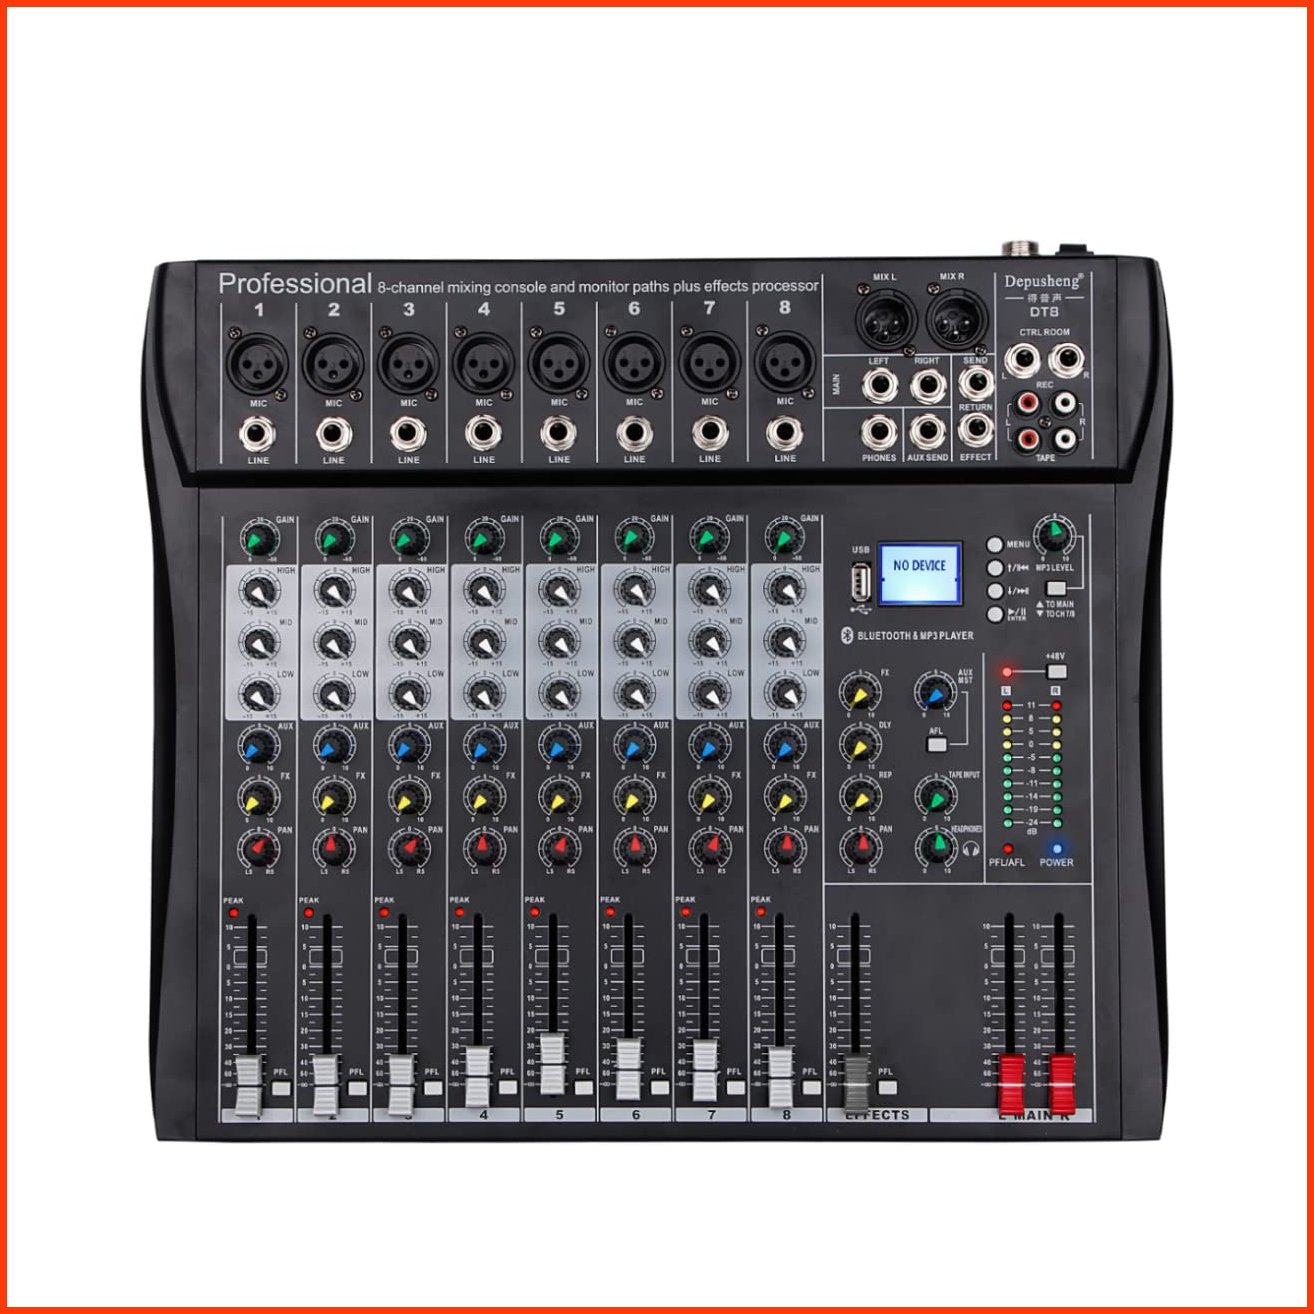 並行輸入品Depusheng DT8 Professional Mixer Sound Board Console 8 Channel Desk System Interface Digital USB Computer MP3